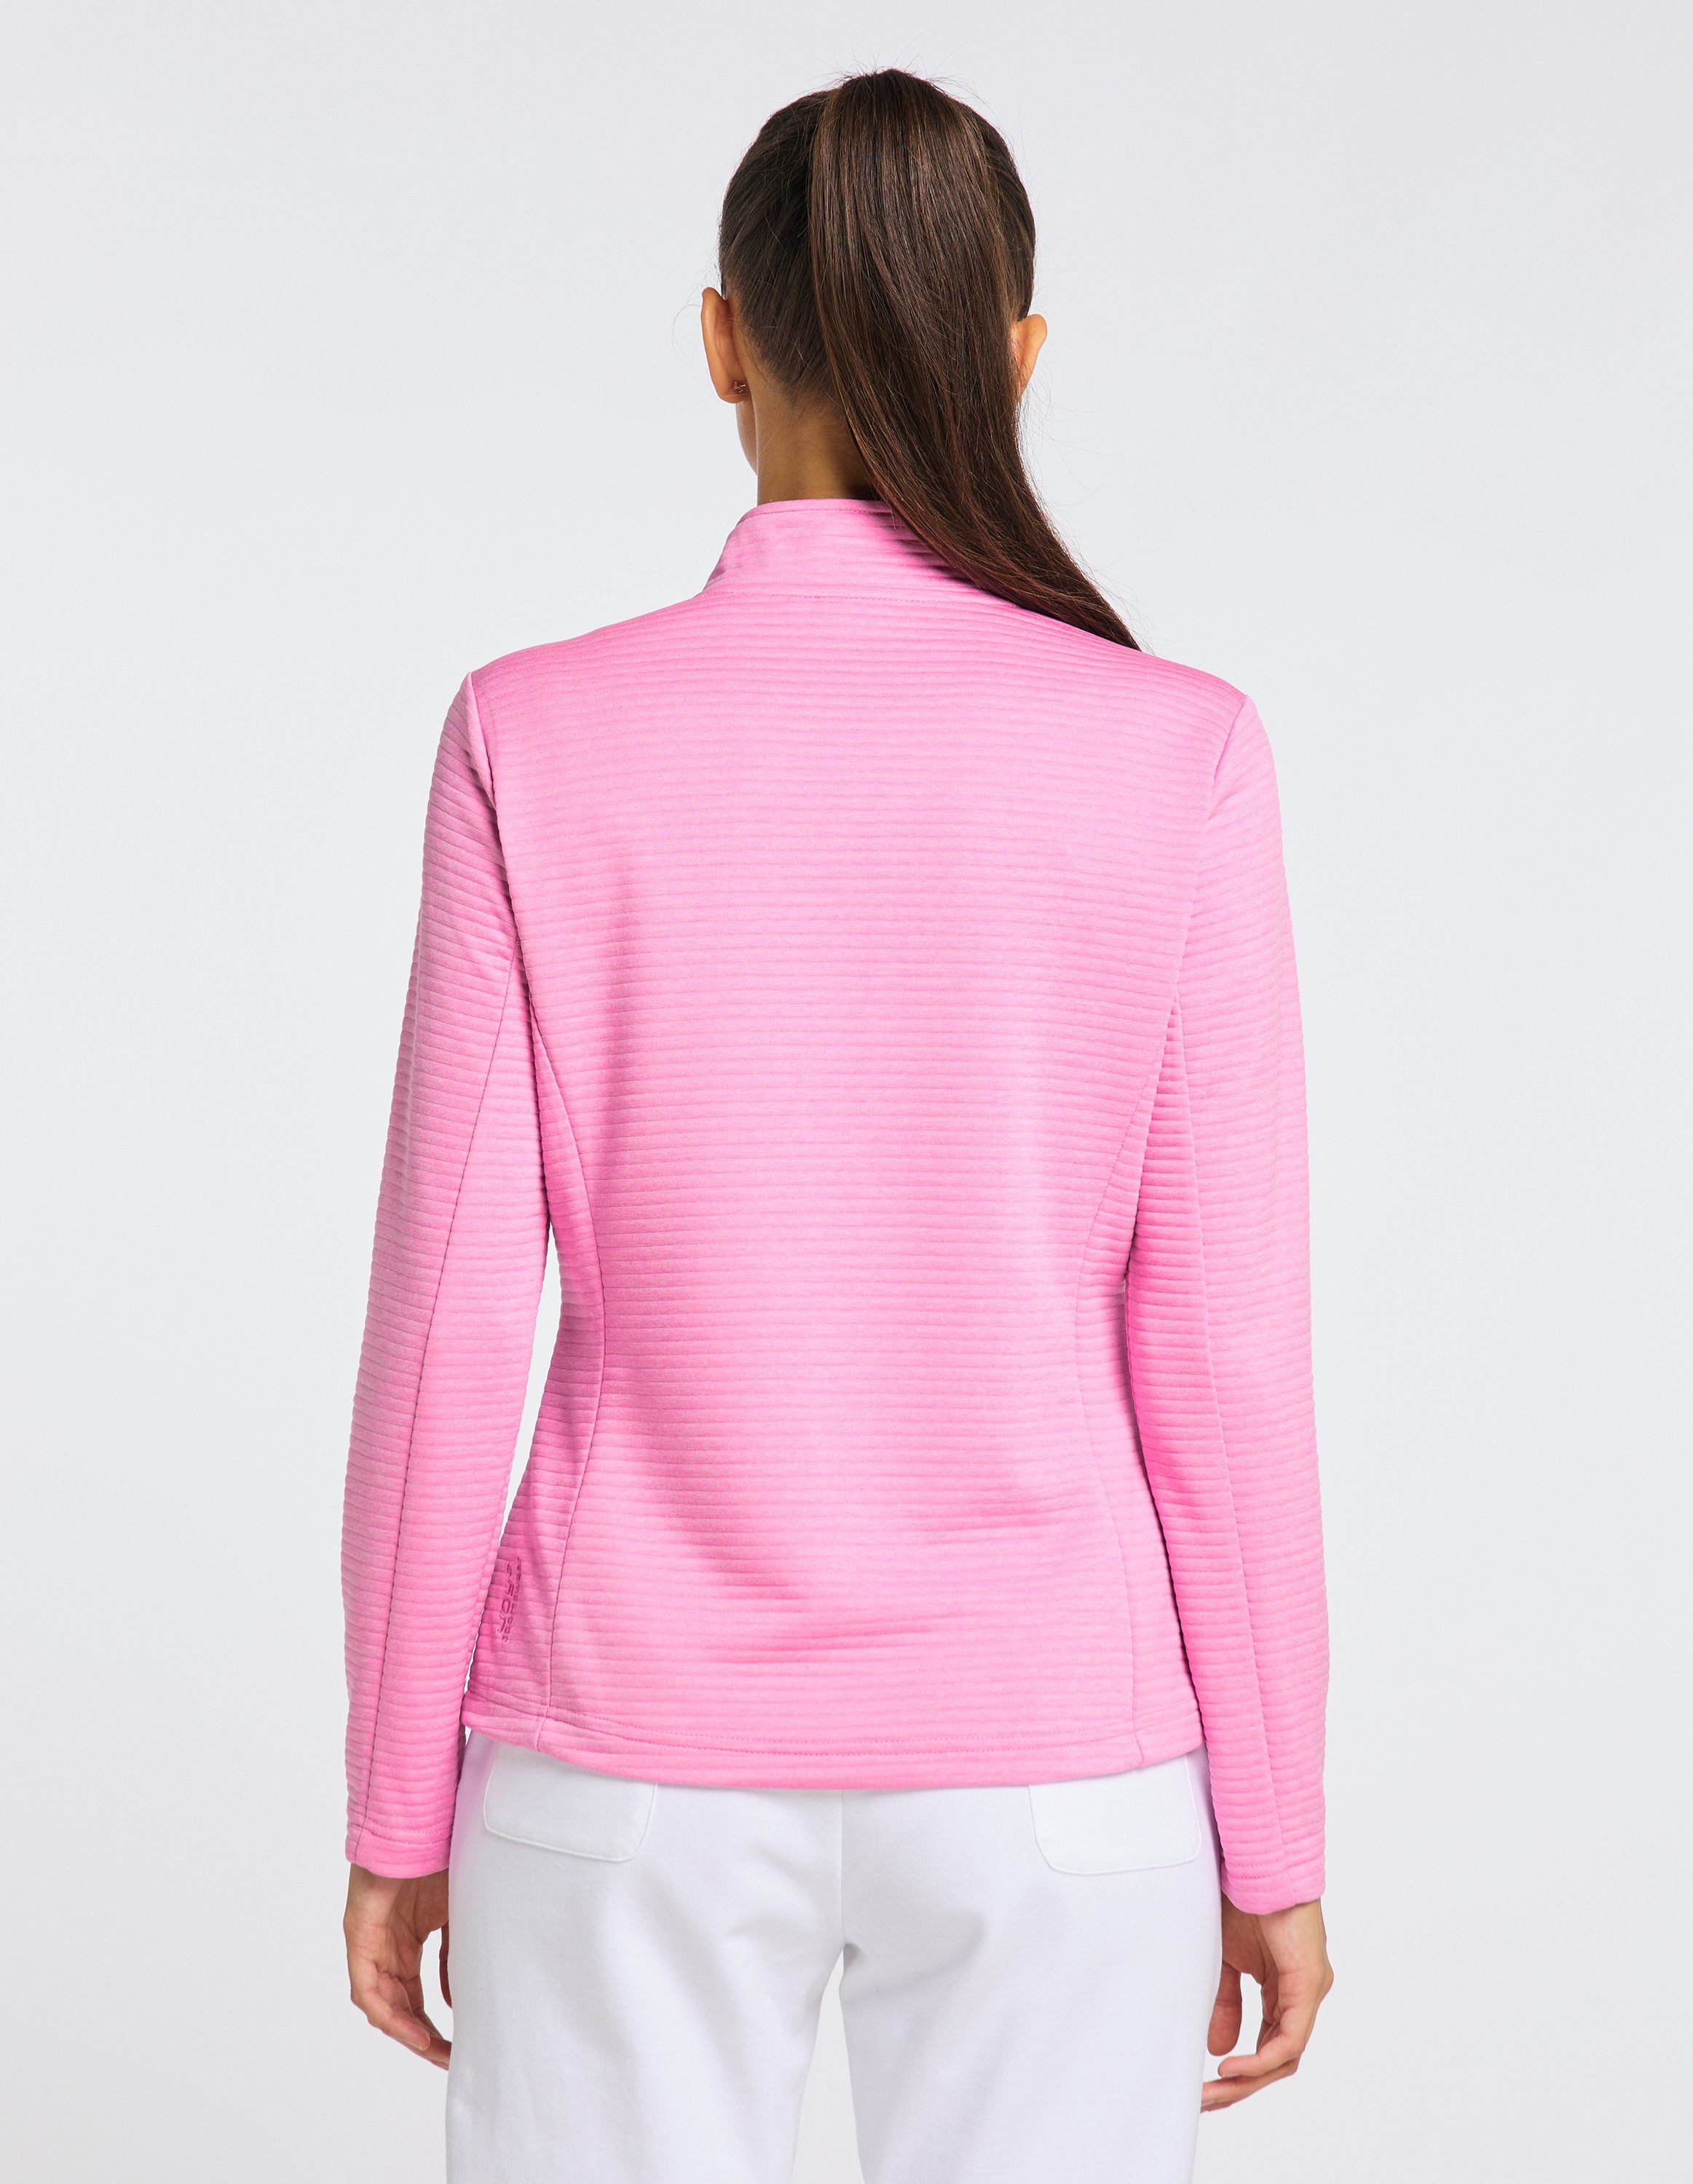 Joy Sportswear Trainingsjacke Jacke PEGGY pink cyclam melange